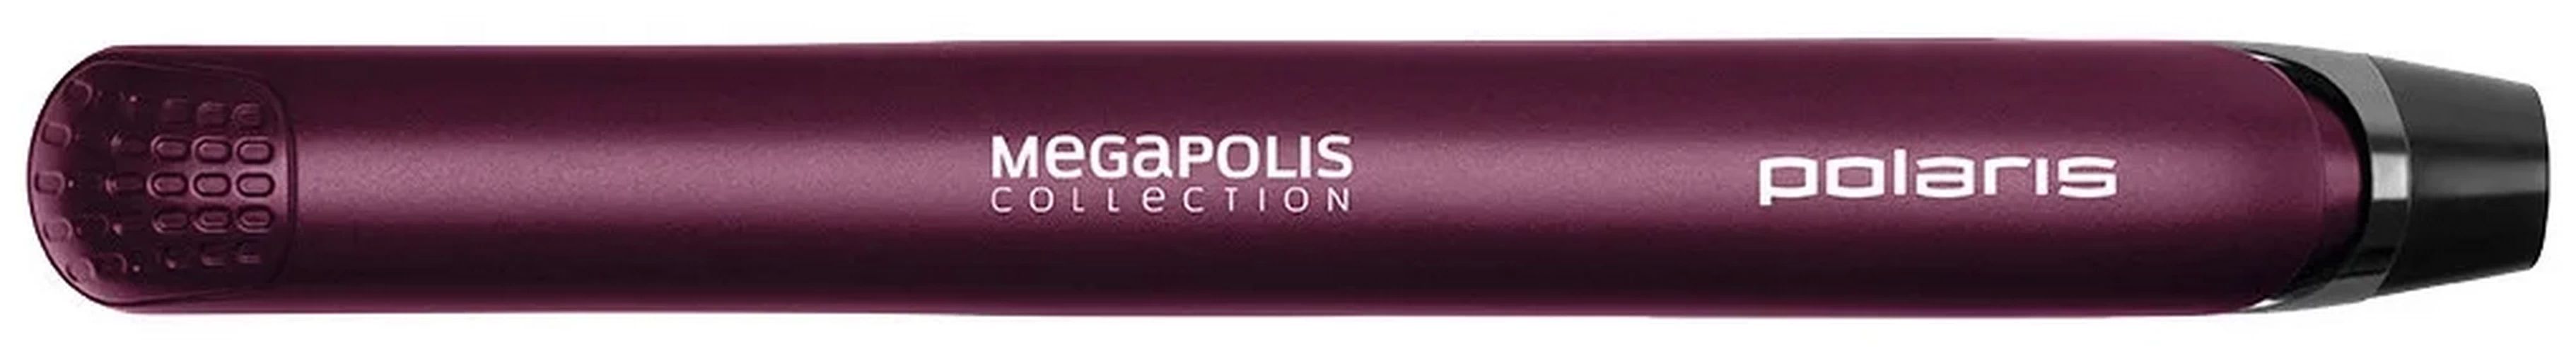 Выпрямитель волос Polaris PHS 2590KT фиолетовый выпрямитель для волос polaris phs 2590kt megapolis collection